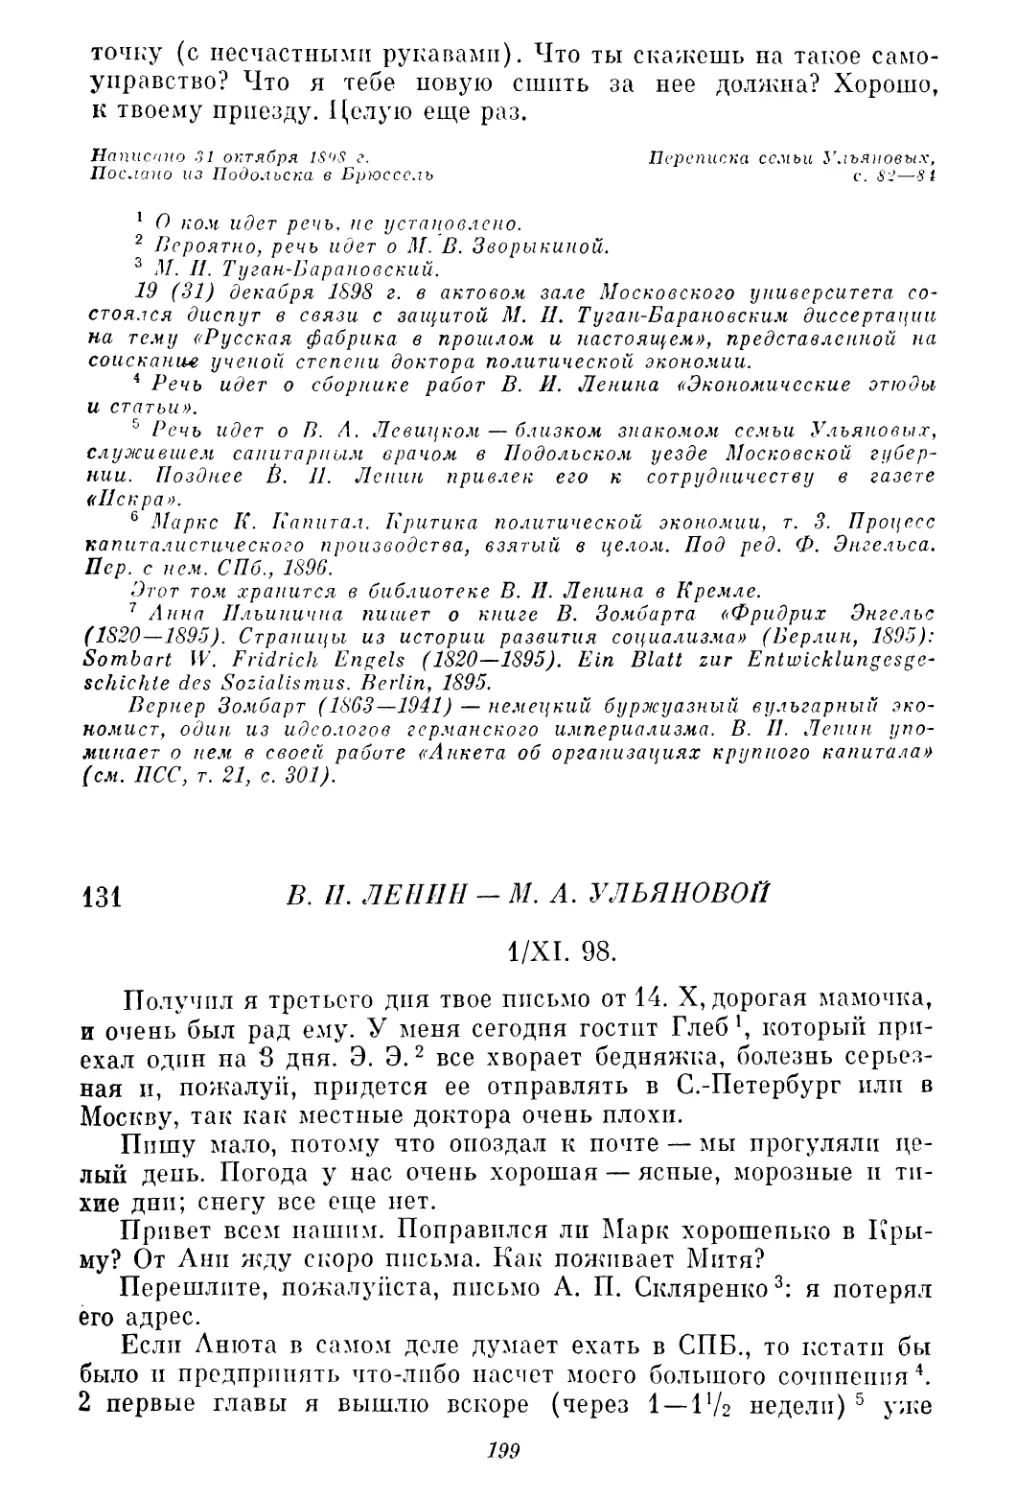 131. В. И. Ленин — М. А. Ульяновой. 1 ноября